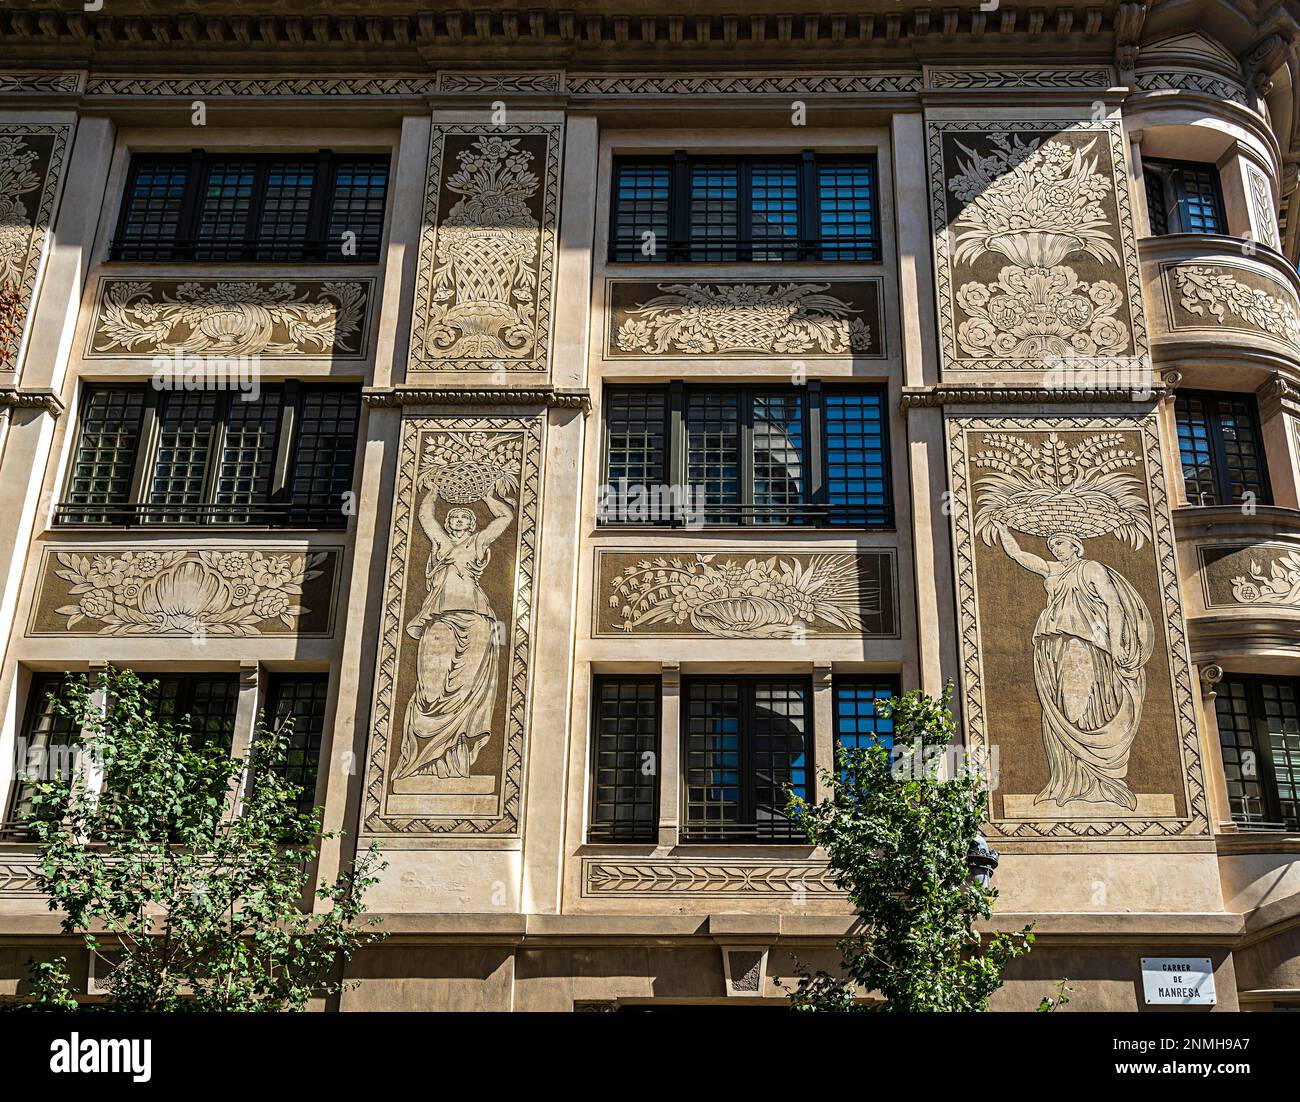 Wunderschönes Design an der Fassade des Hauses, Barcelona, Katalonien, Spanien Stockfoto